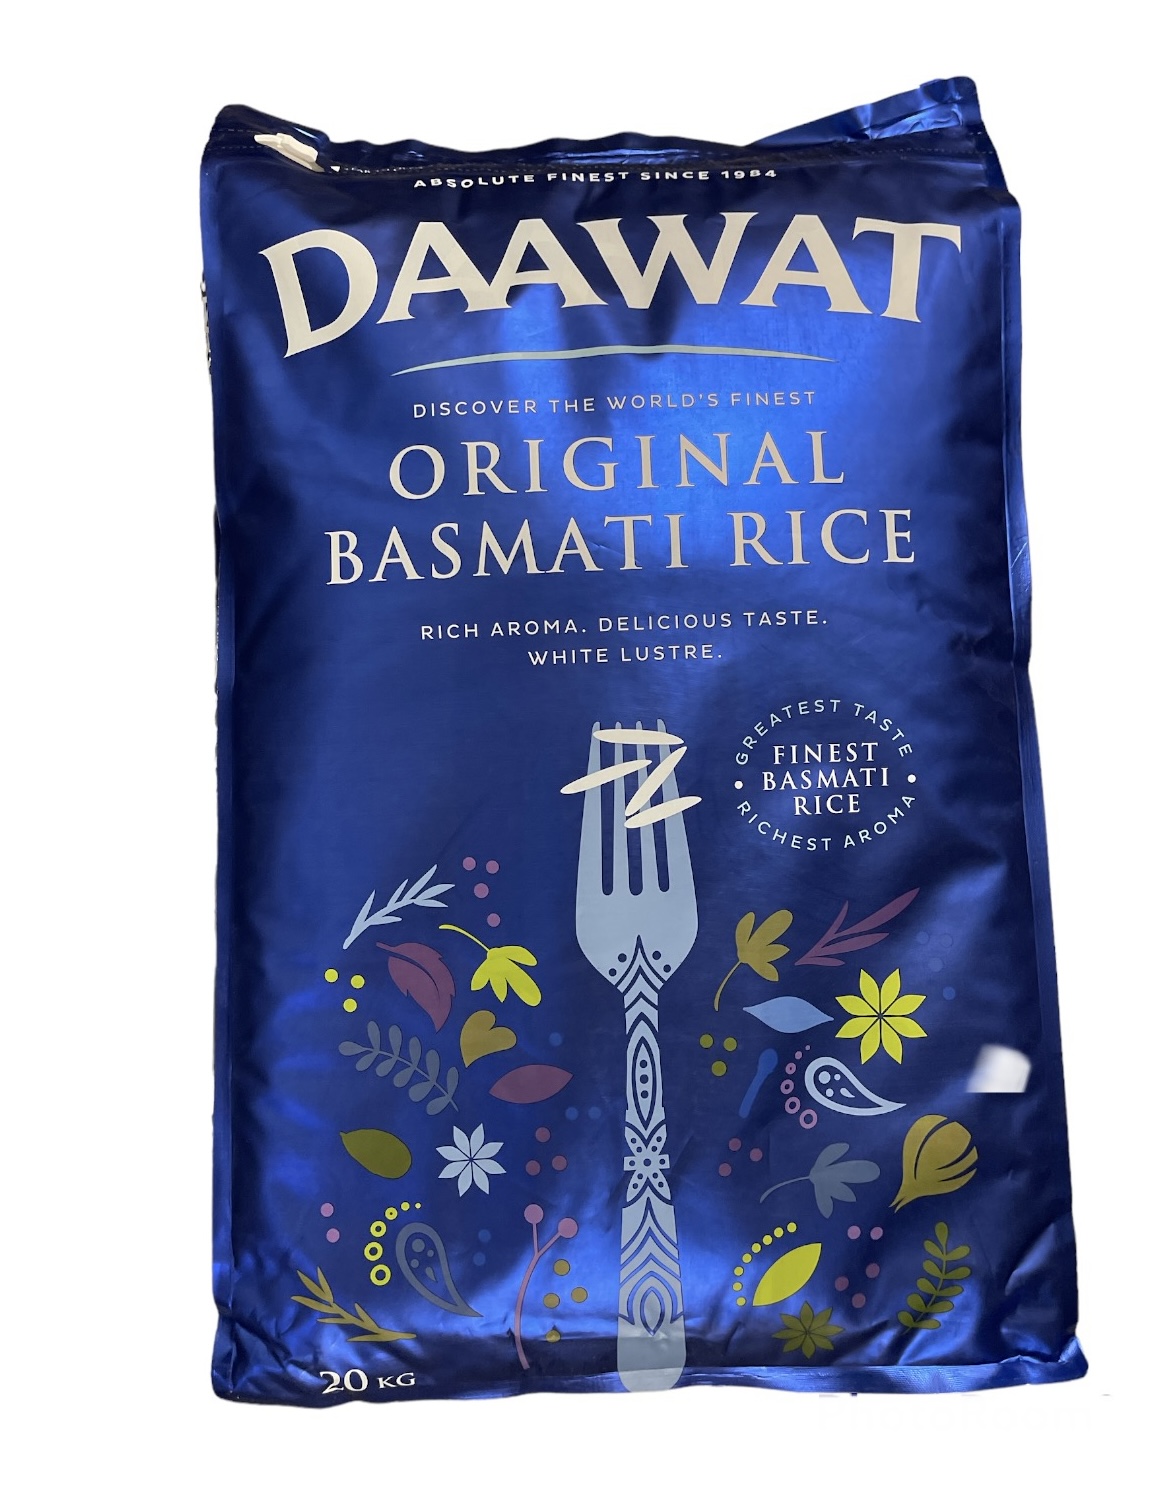 Daawat Basmati Original Rice 20KG